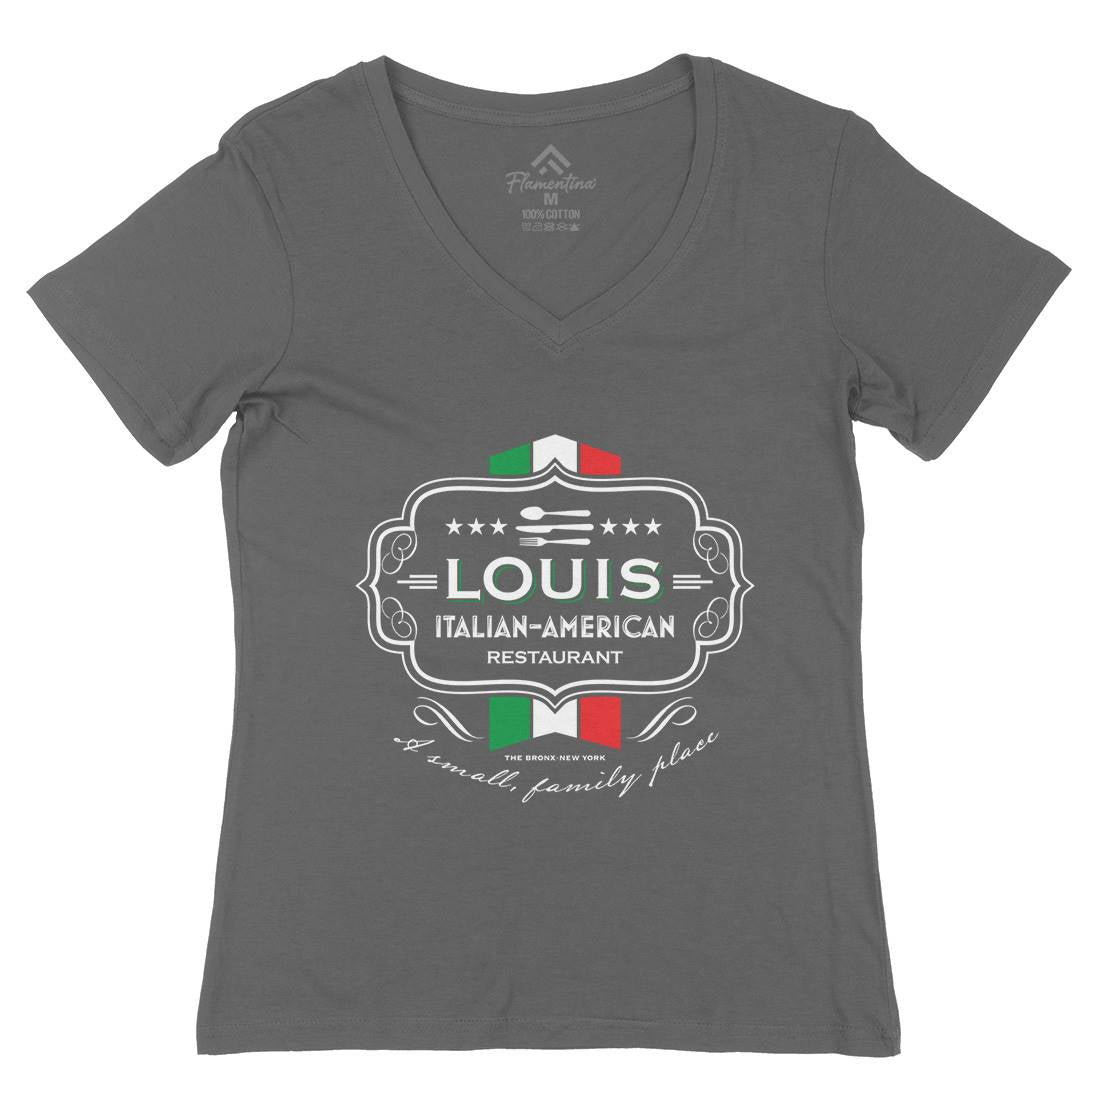 Louis Restaurant Womens Organic V-Neck T-Shirt Food D268